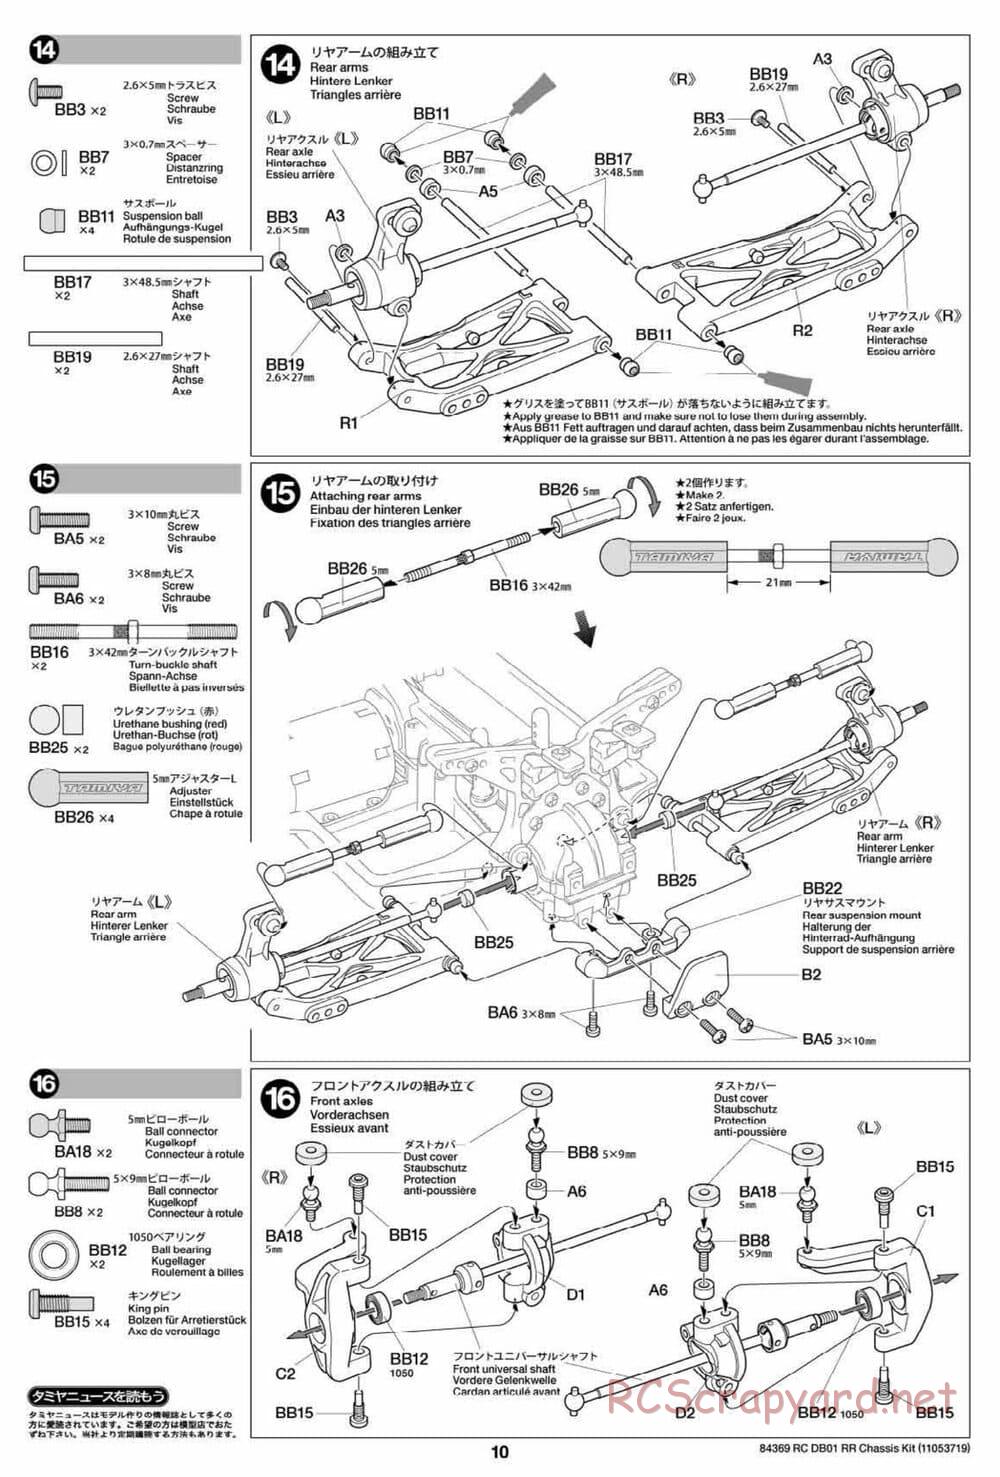 Tamiya - DB-01 RR Chassis - Manual - Page 10